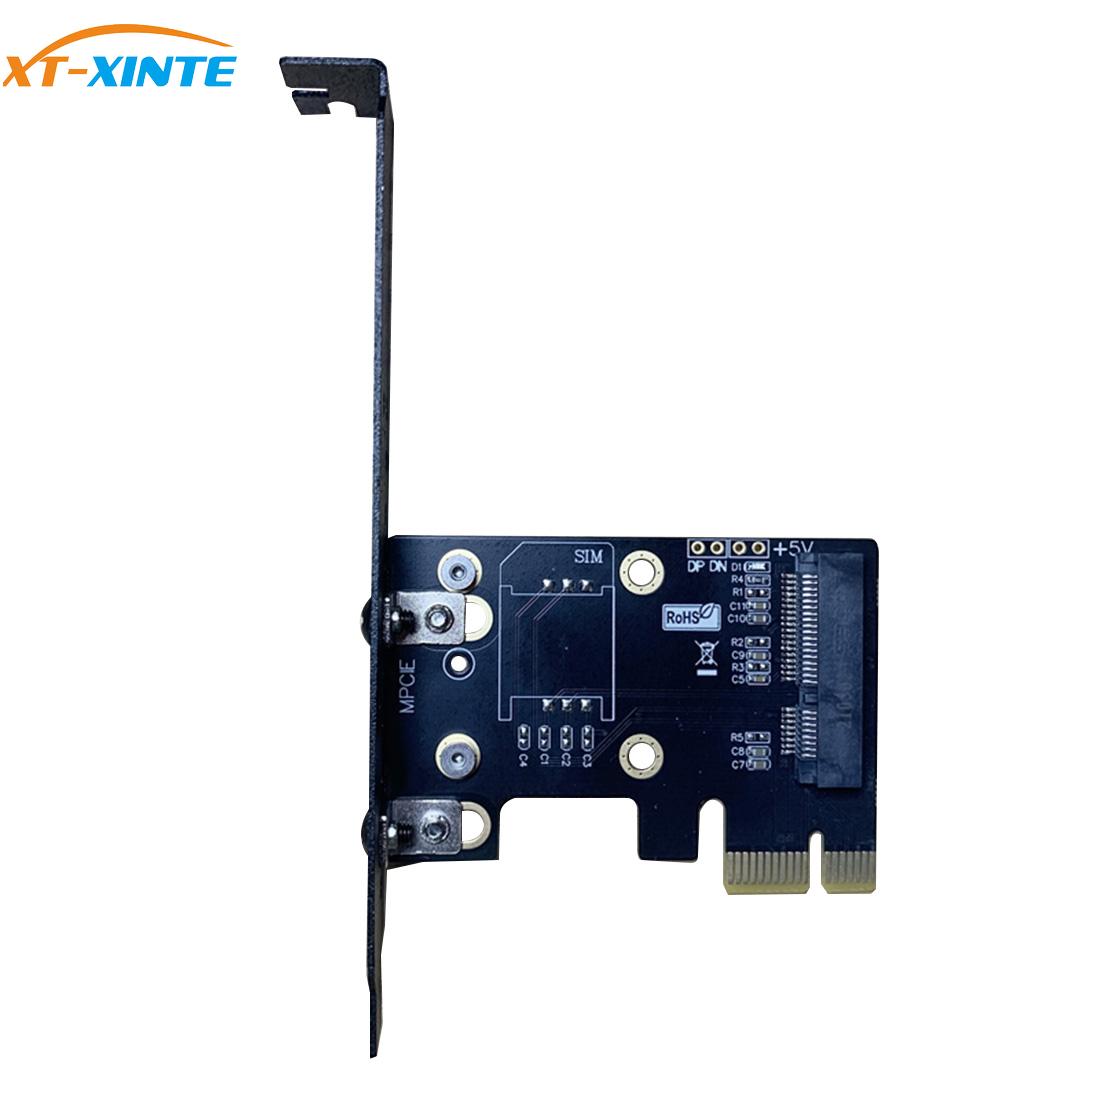 XT-XINTE Mini Pcie Naar Pcie X1 Adapter Kaart Voor Draadloze Netwerkkaart AX200 Voor Desktop